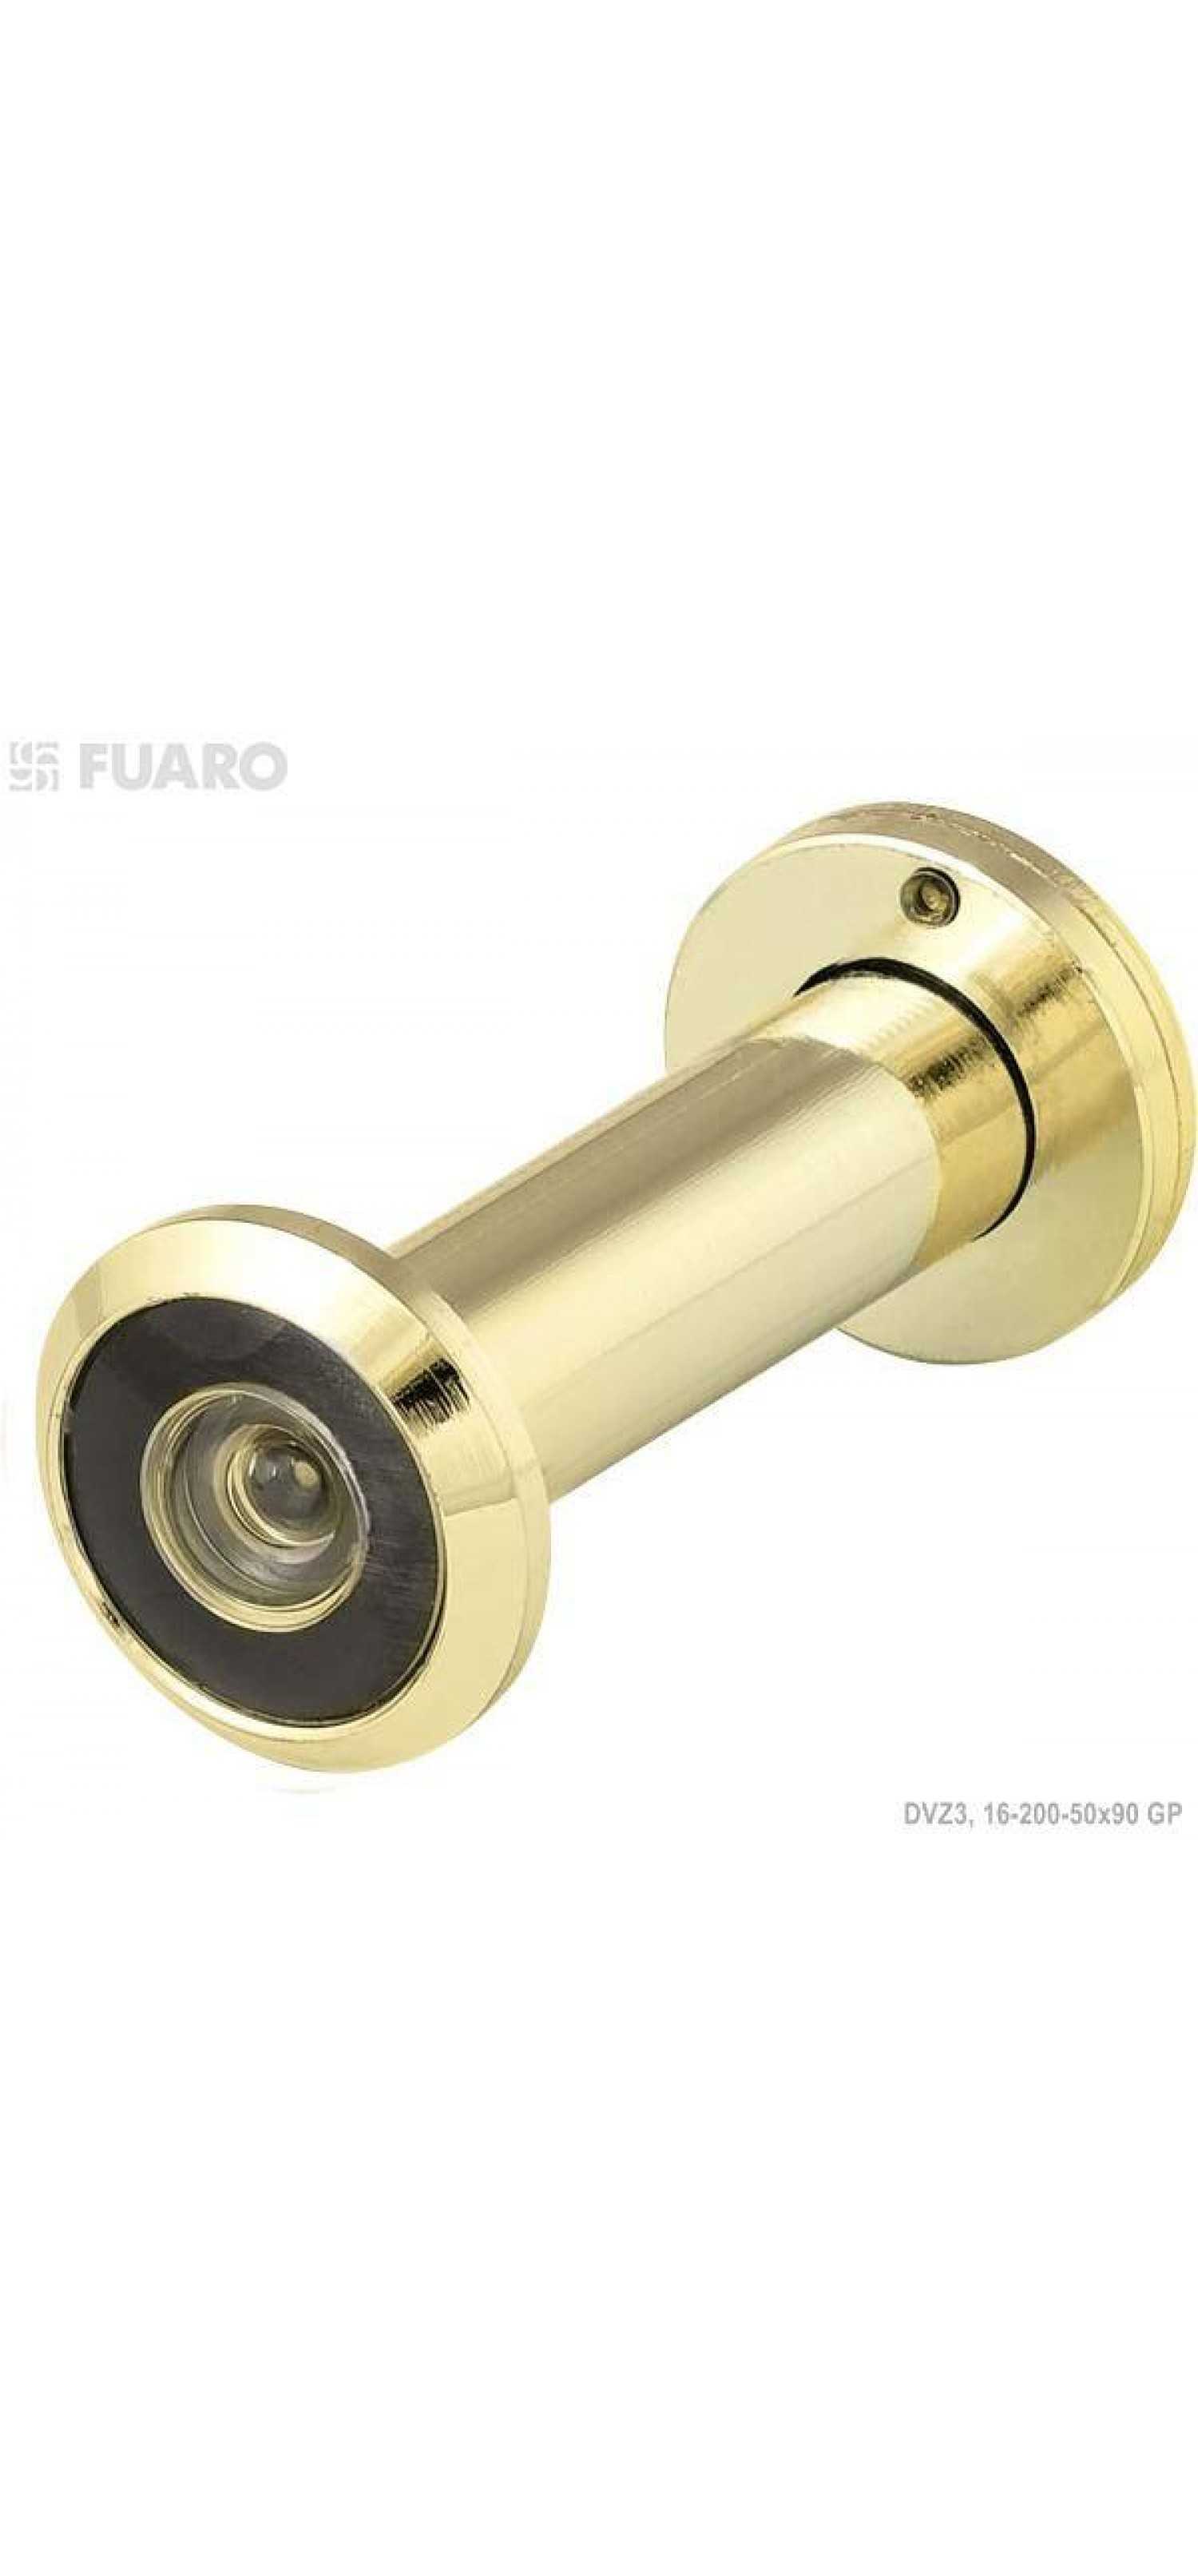 Строительный глазок. Дверной глазок Fuaro dvz4. Глазок дверной Fuaro dvz4(70-130мм) хром. Глазок Inspector 50-70 (хром). Глазок дверной 2p205, l= 35-60 мм, d=16 мм, цвет хром.